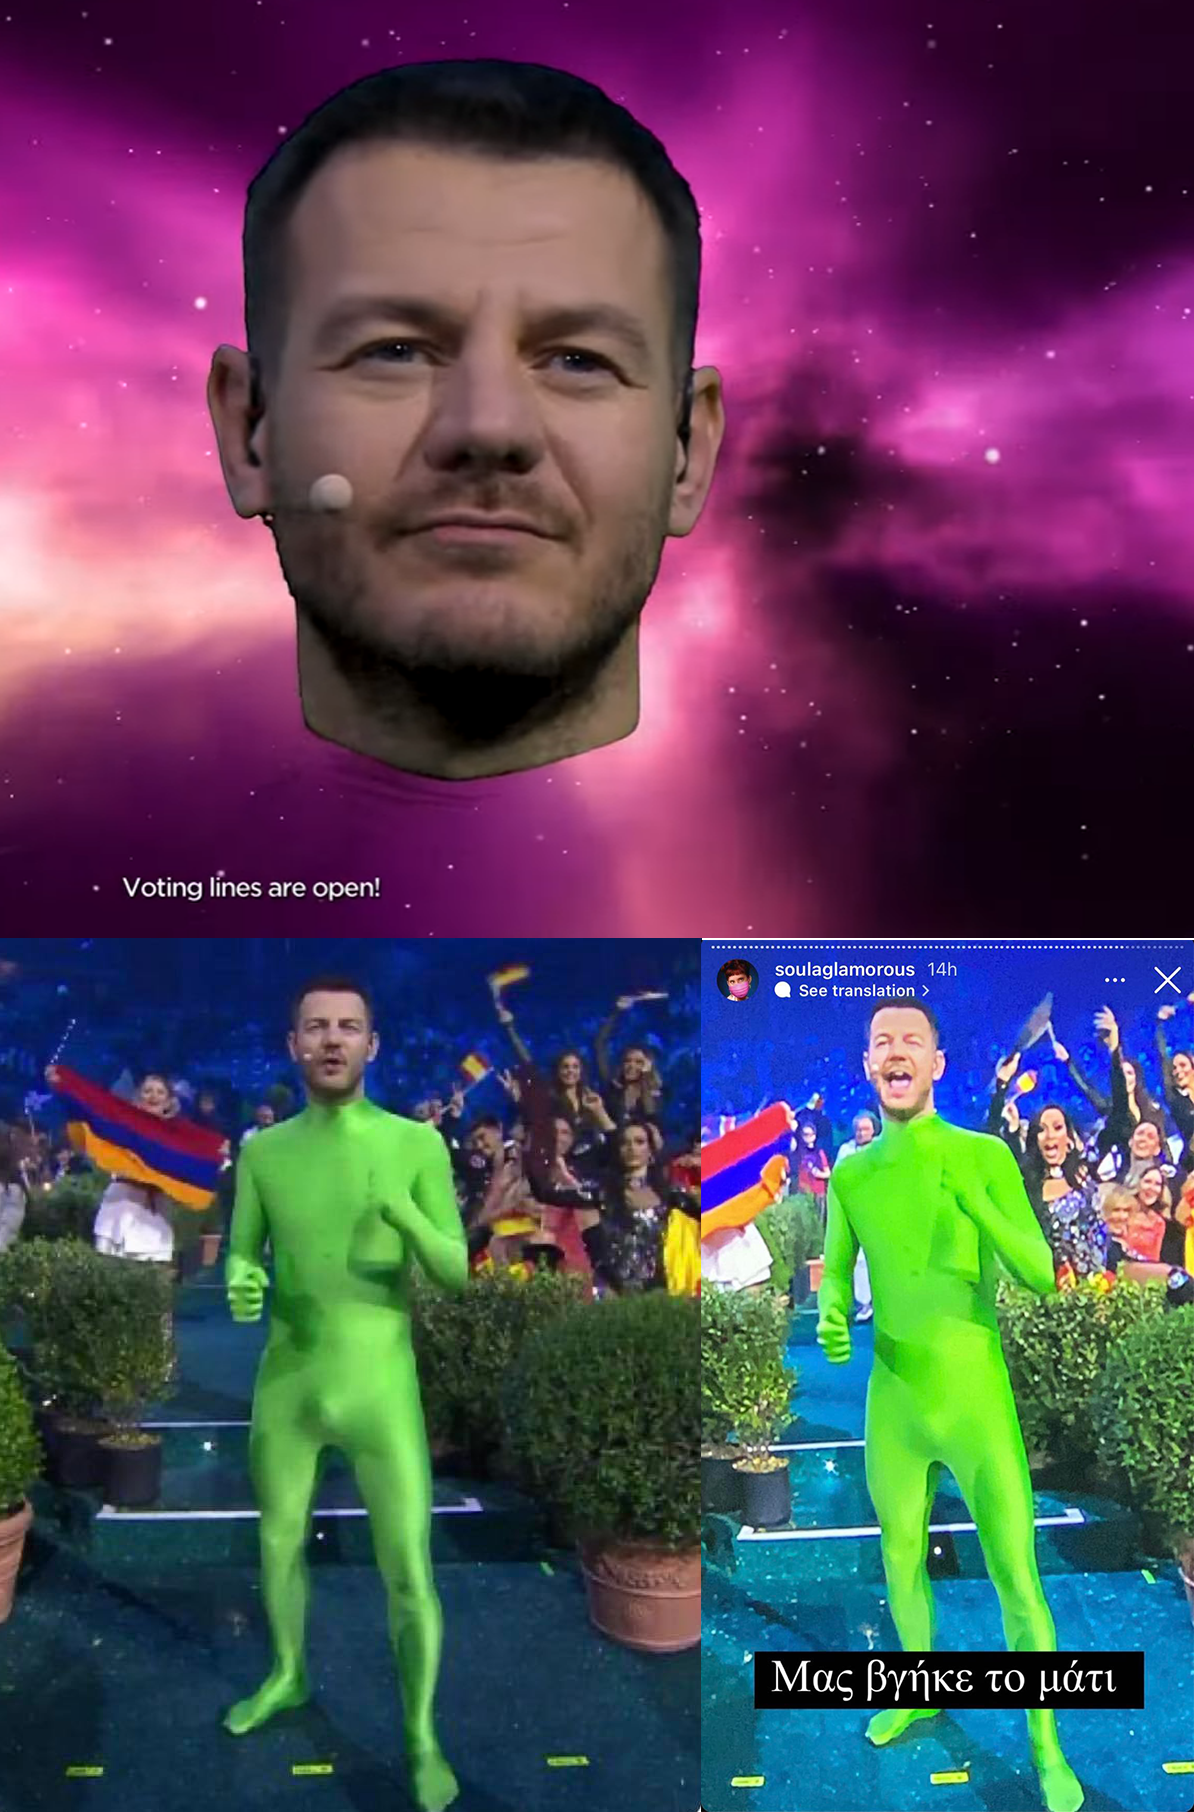 Φάνηκε αυτό που δεν έπρεπε: Το απερίγραπτο πλάνο στο τελικό της Eurovision που έγινε viral σε ολόκληρη την Ευρώπη (Pics)